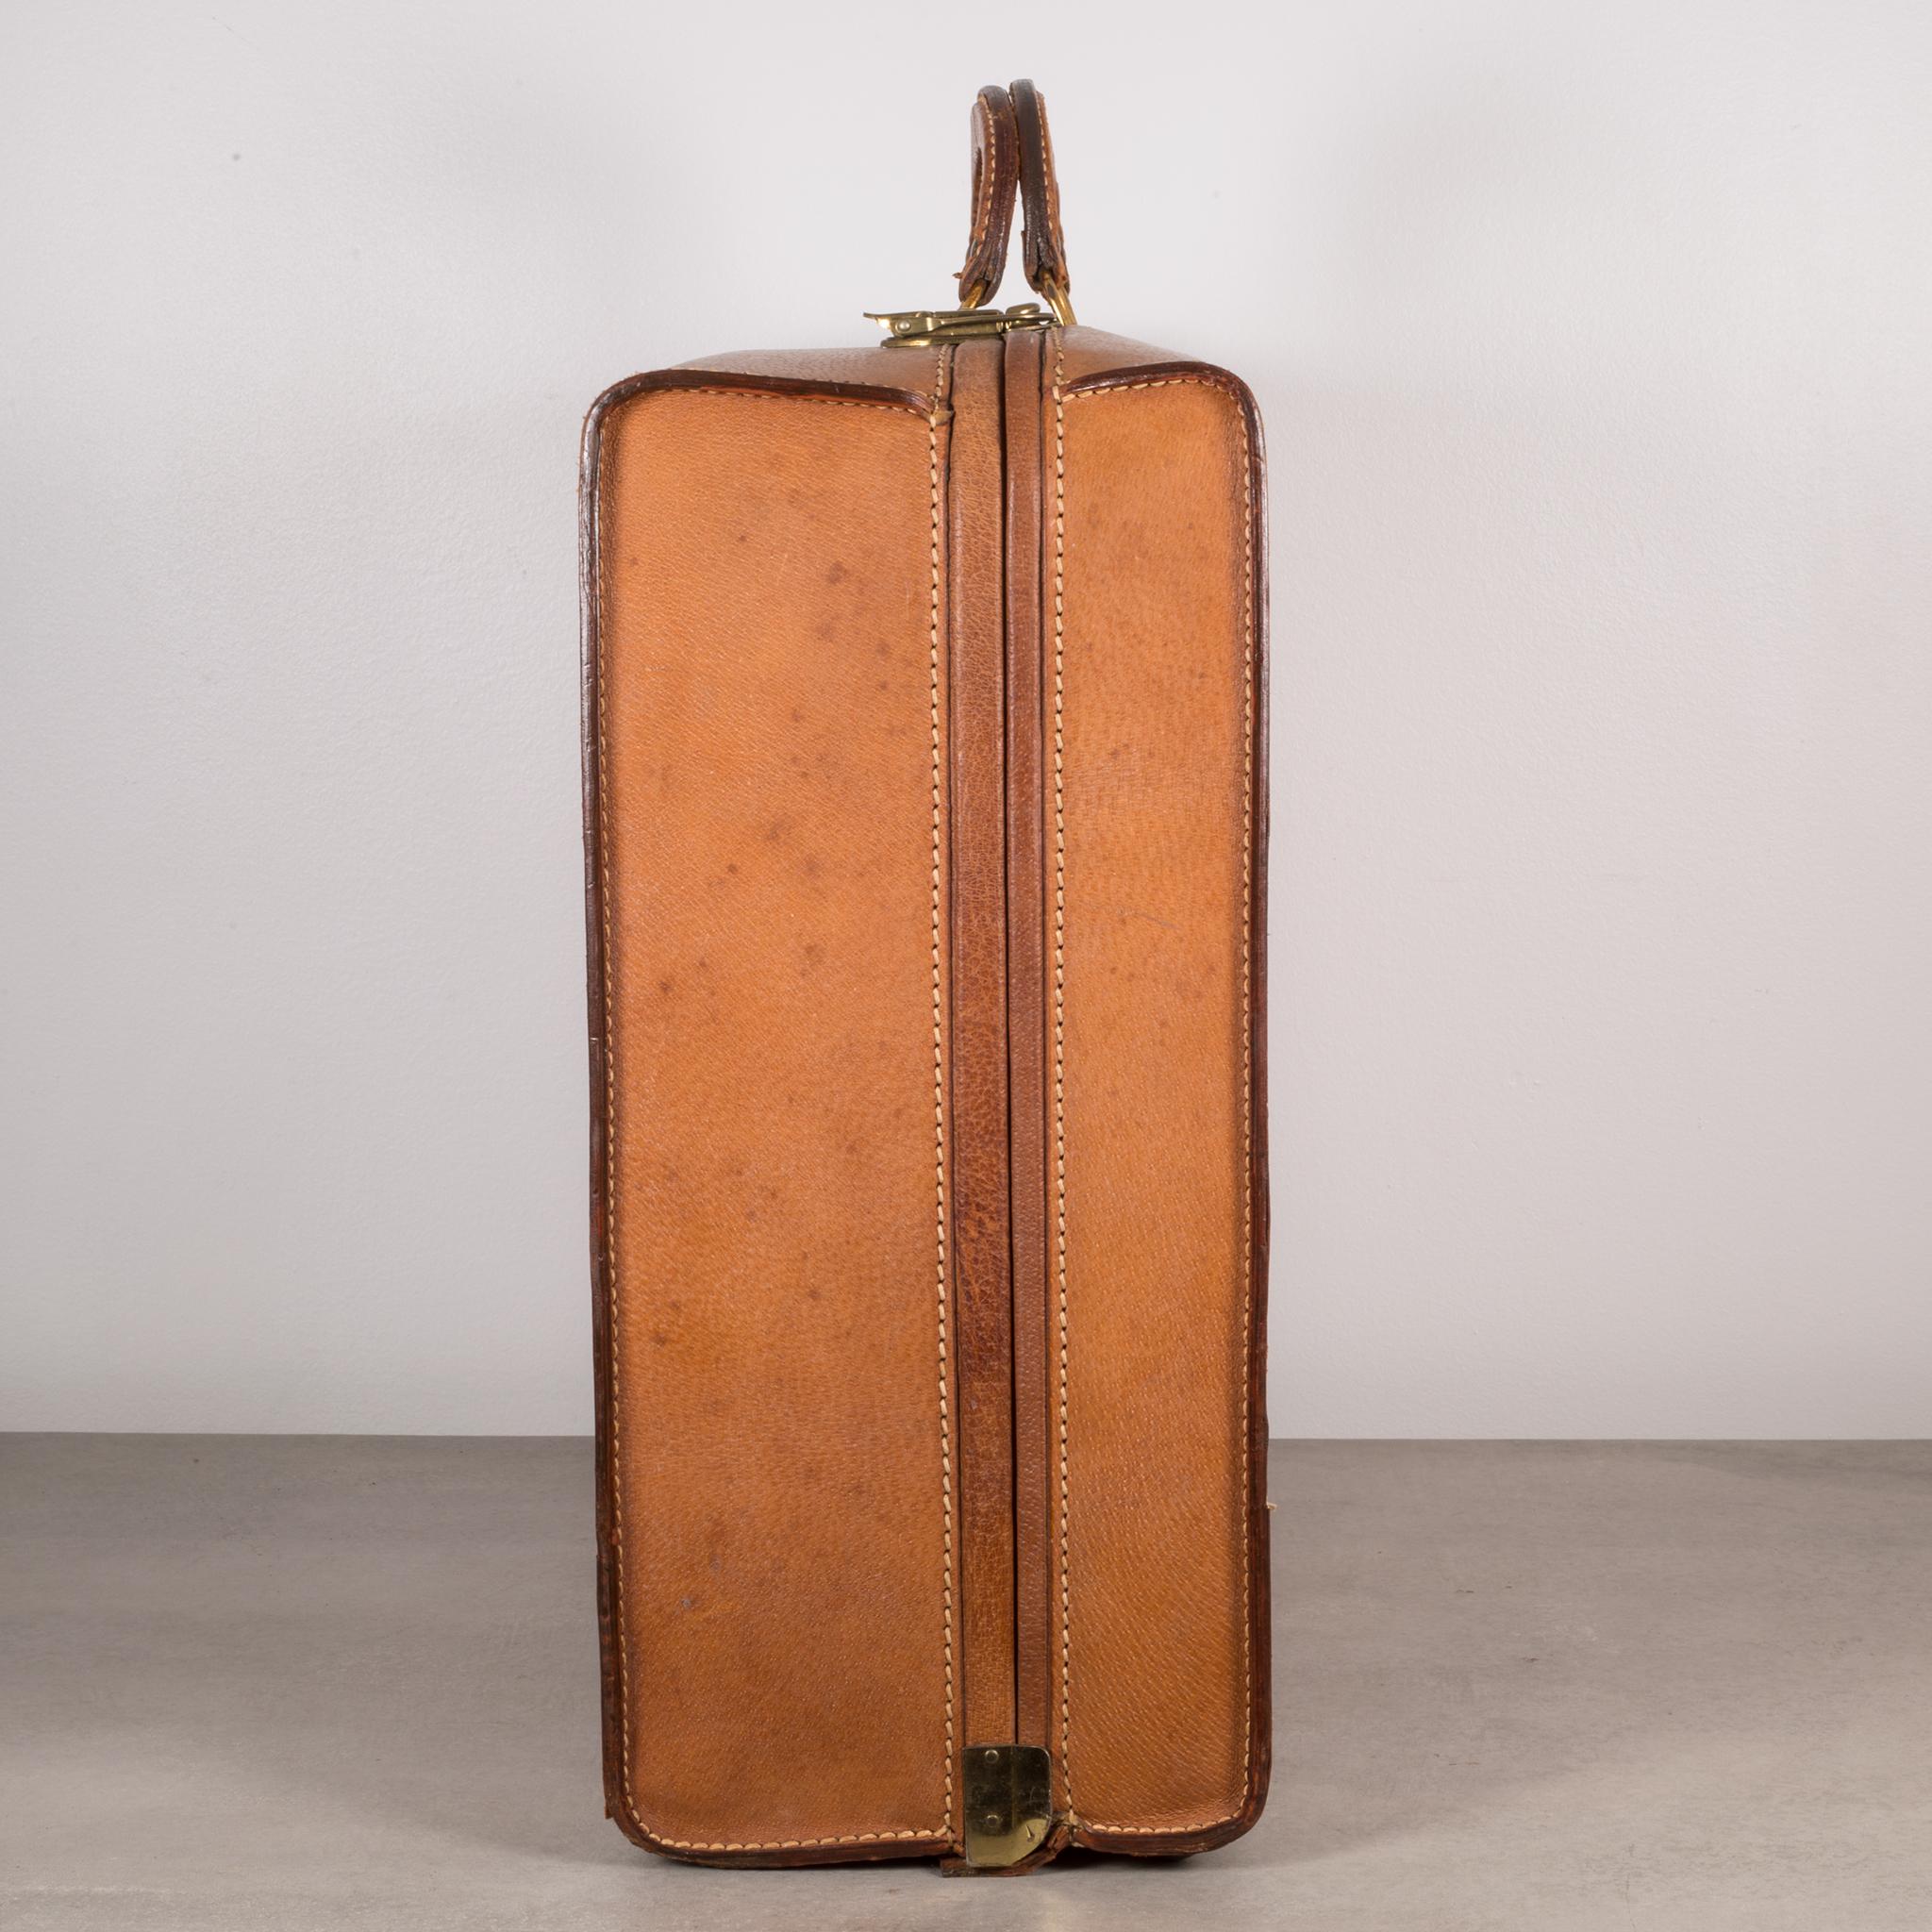 American Pigskin Luggage by Boyle, circa 1940